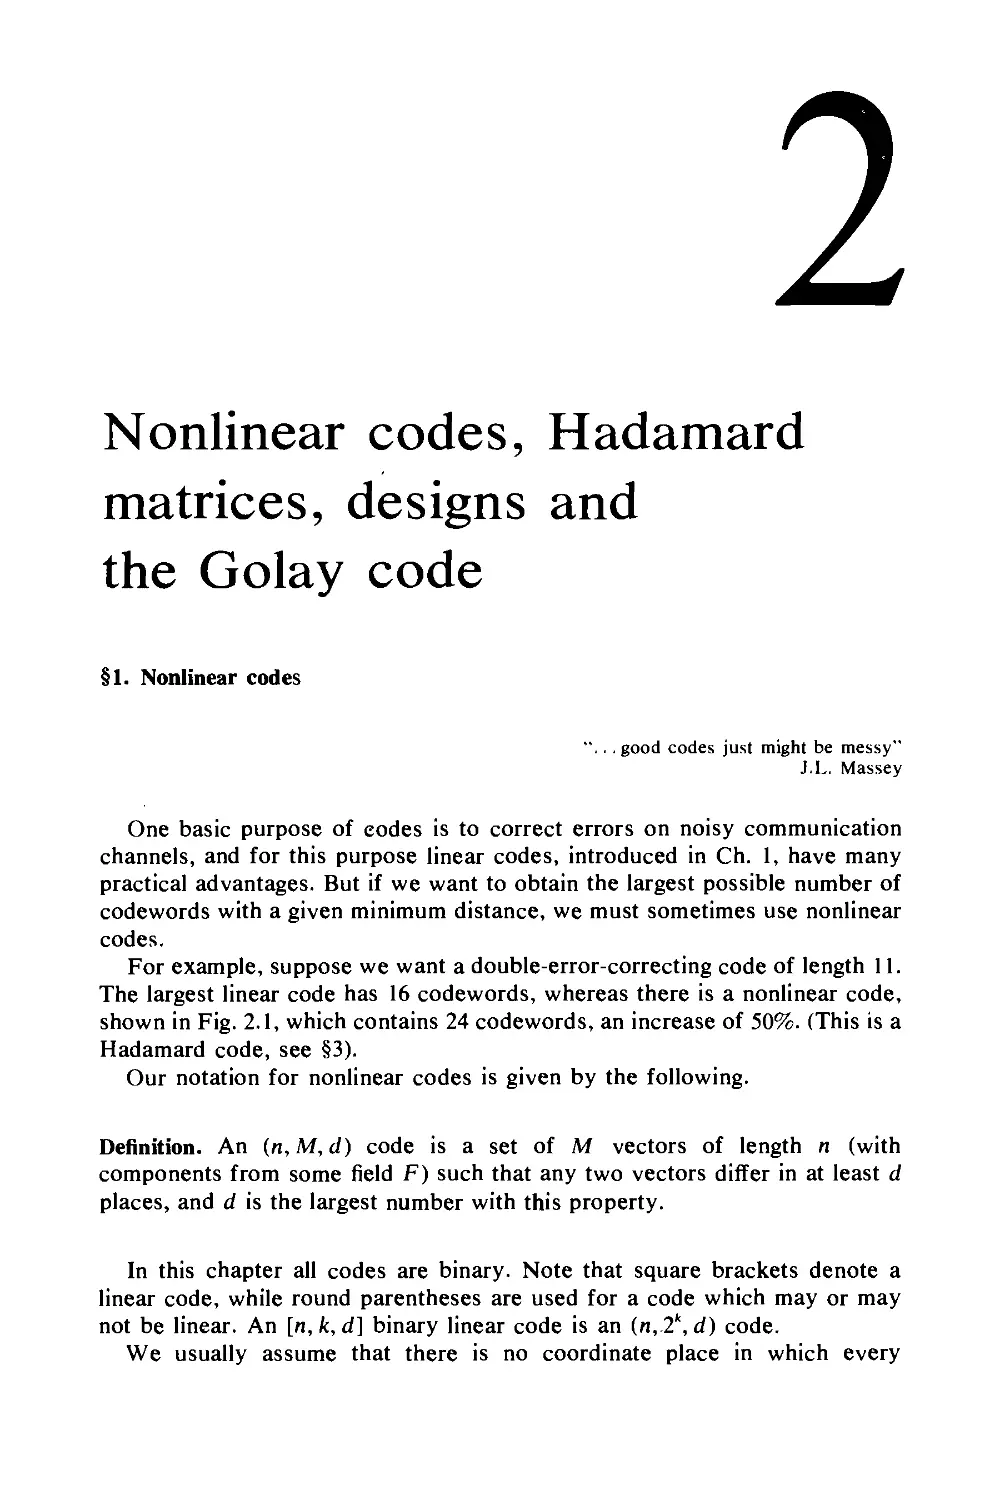 2. Nonlinear codes, Hadamardmatrices, designs andthe Golay code